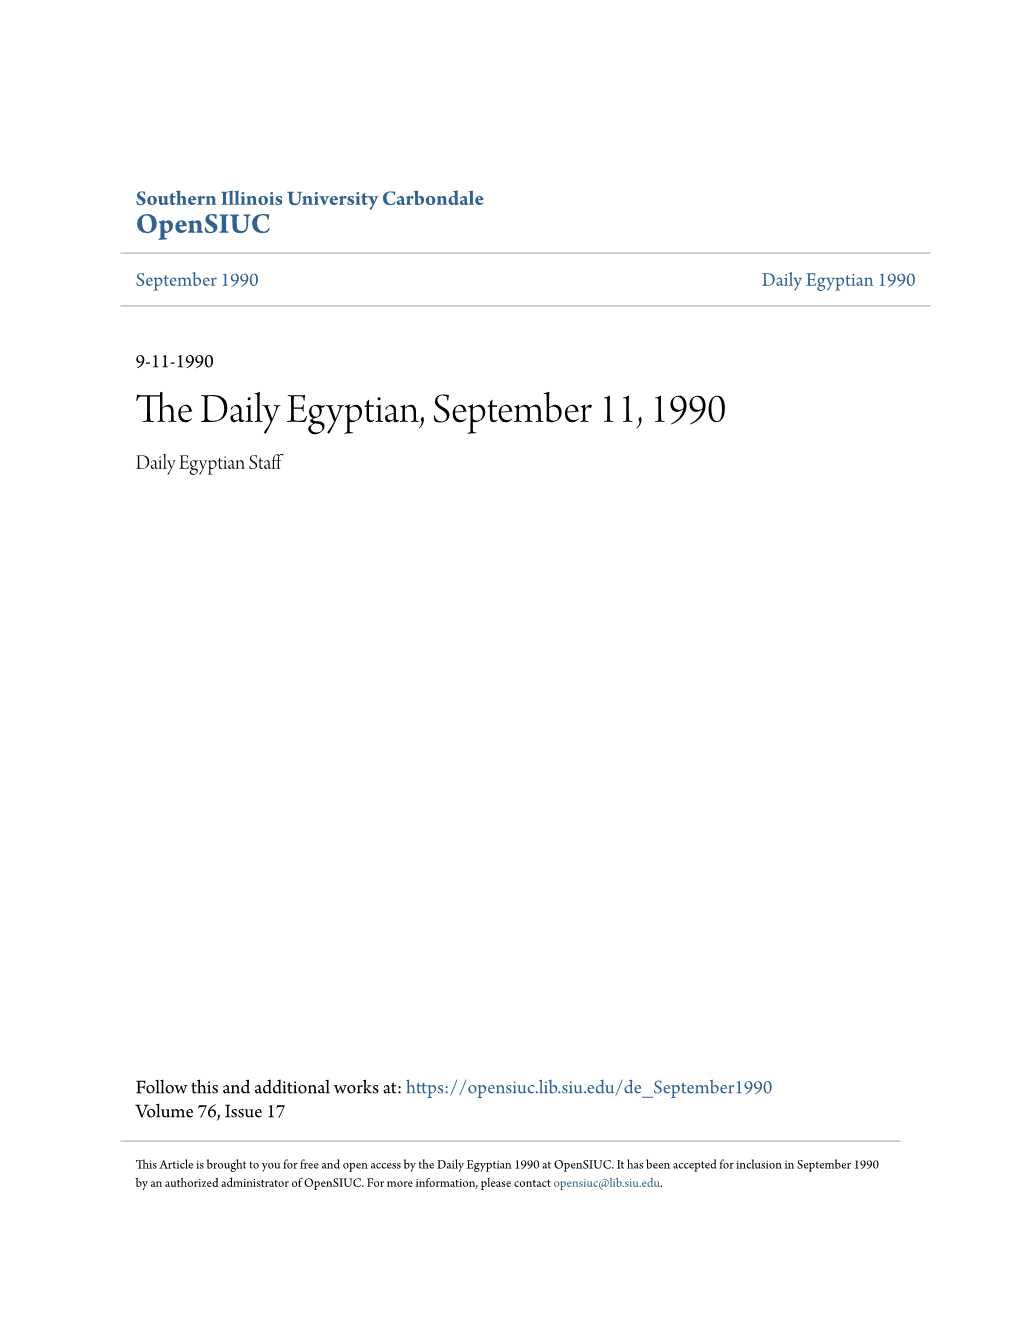 The Daily Egyptian, September 11, 1990